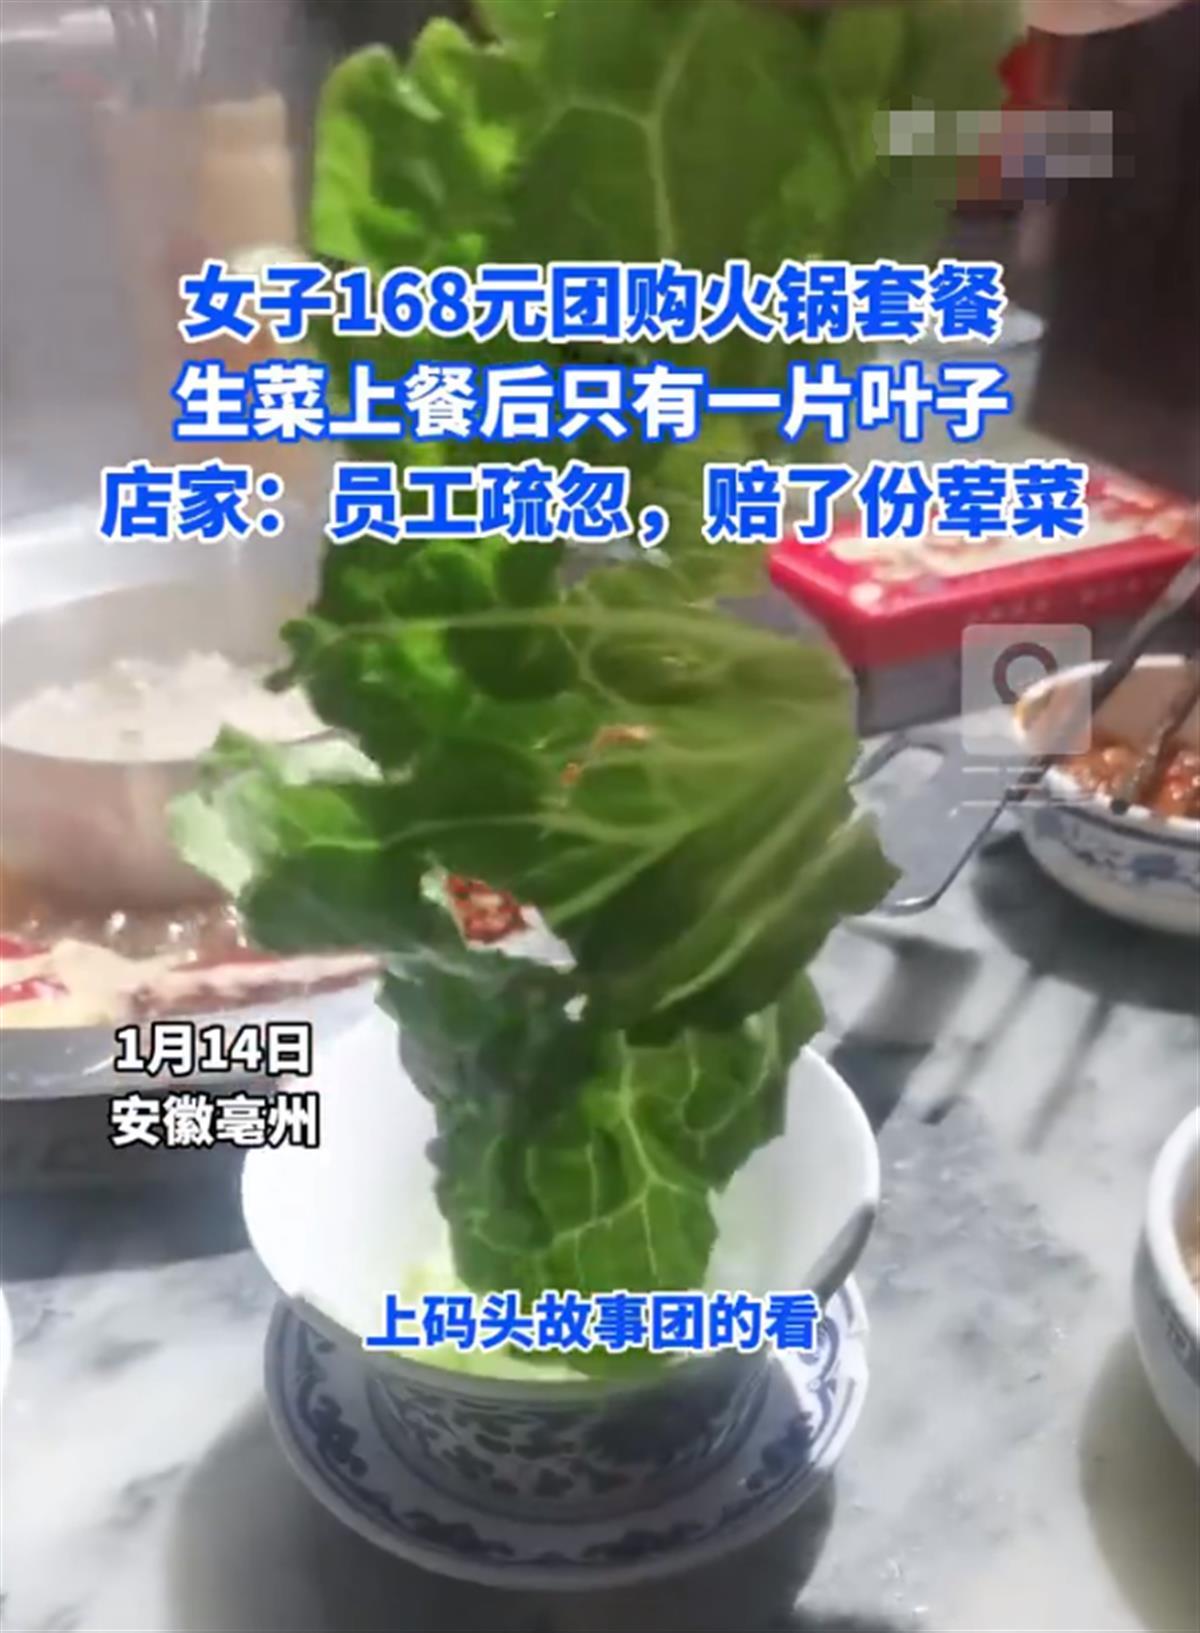 168元火锅套餐生菜只有1片叶子